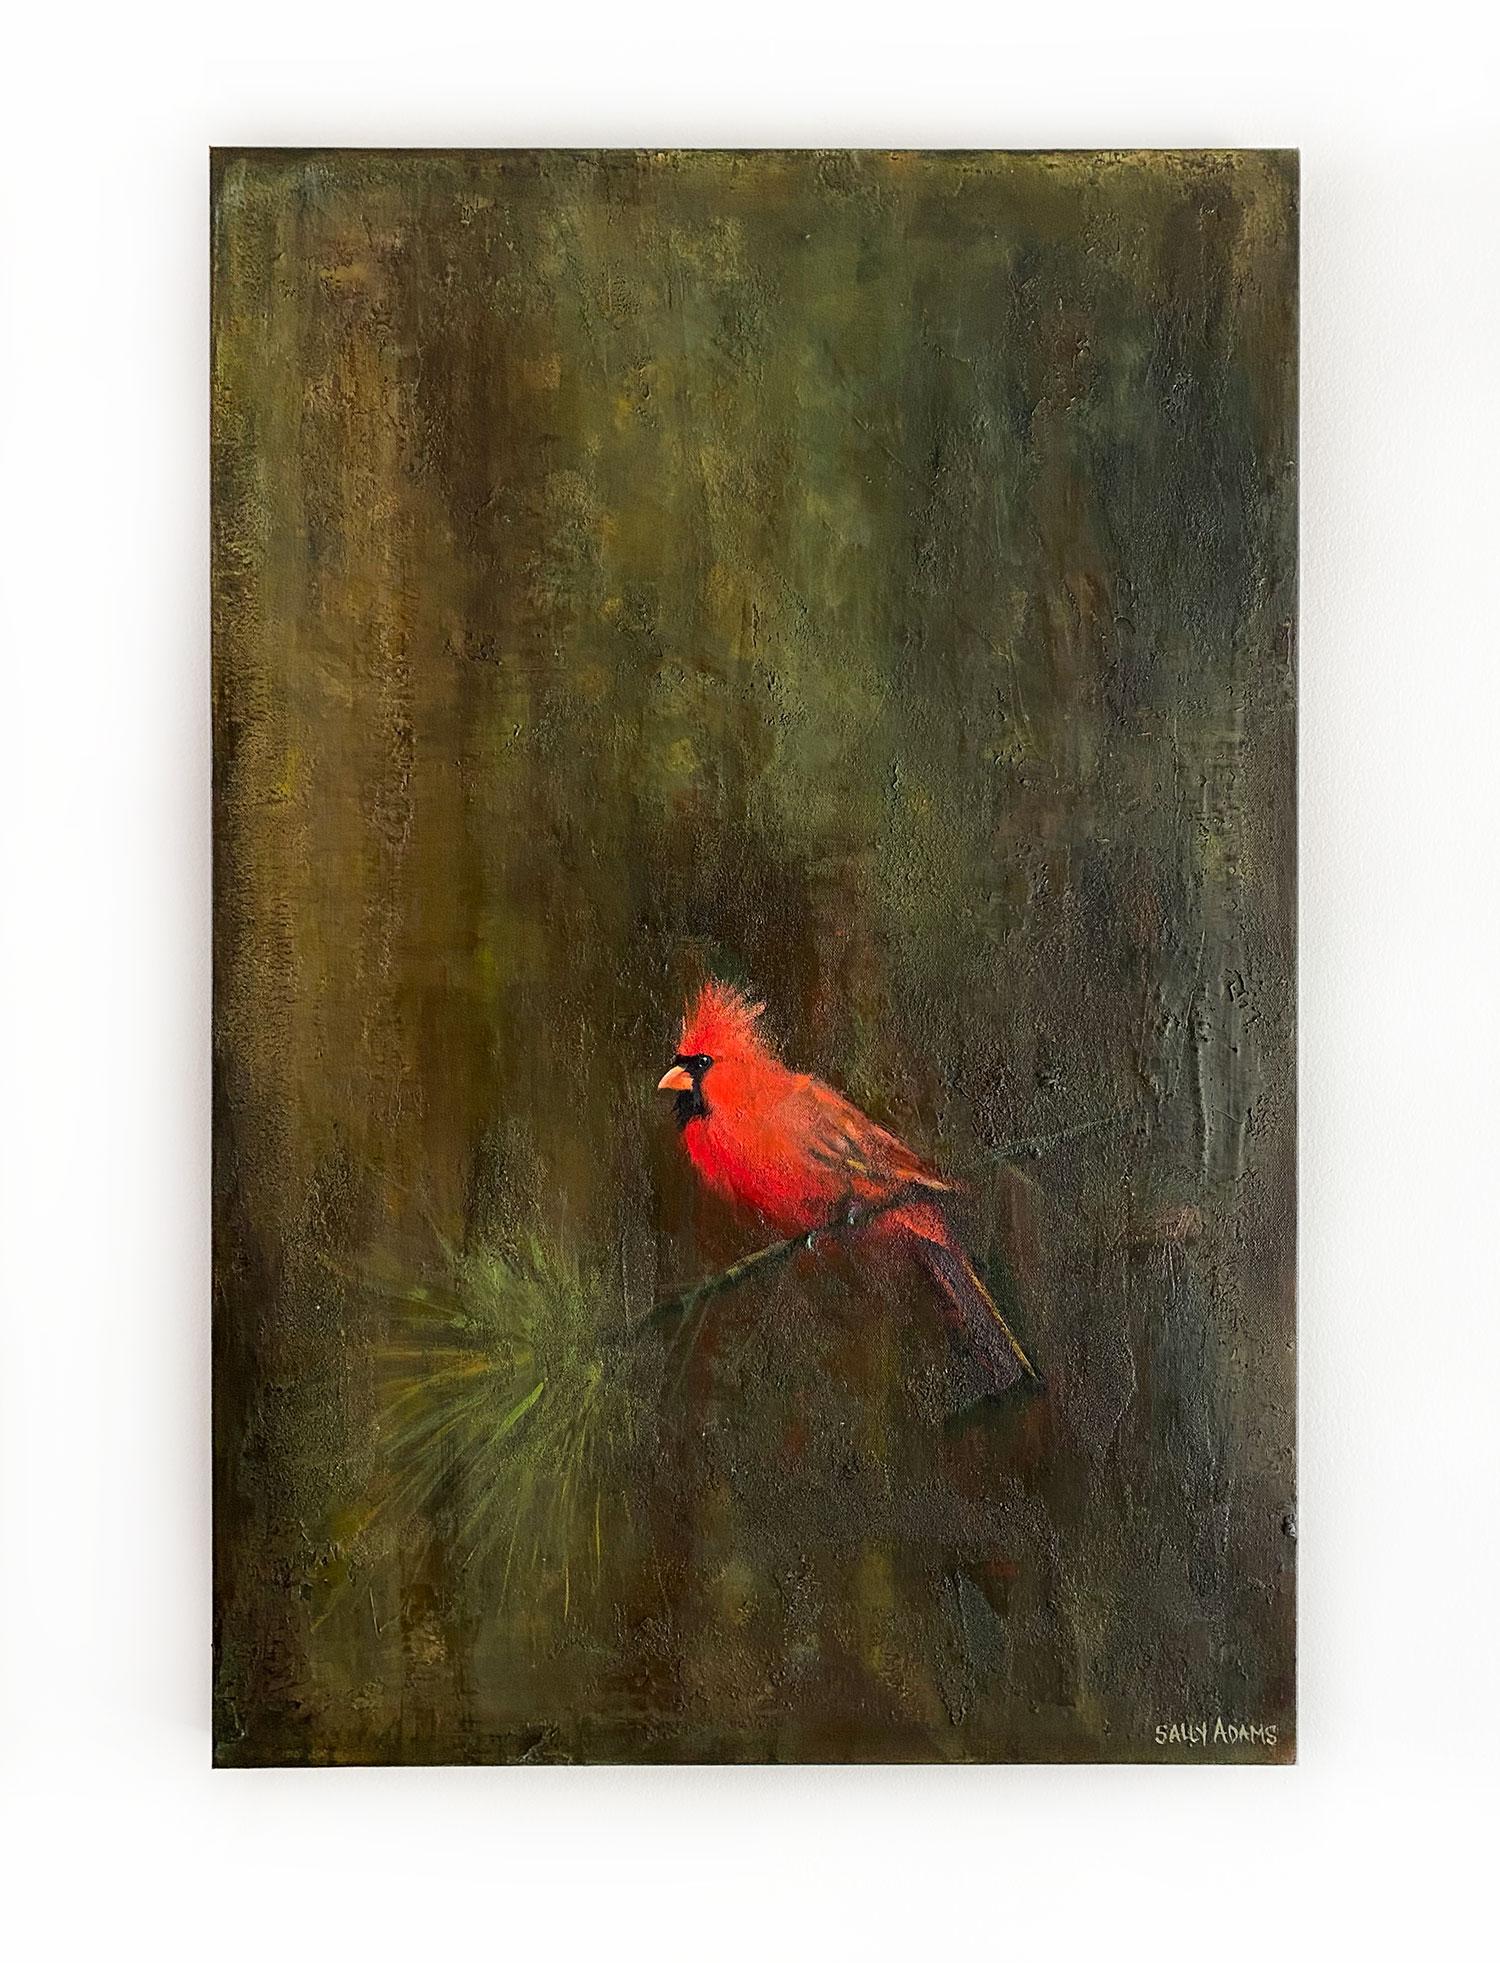 <p>Kommentare des Künstlers<br>Die Künstlerin Sally Adams stellt einen roten Kardinal dar, der auf einem dünnen Ast sitzt. Sie malt den Vogel mit feinem Detailreichtum und Realismus. 